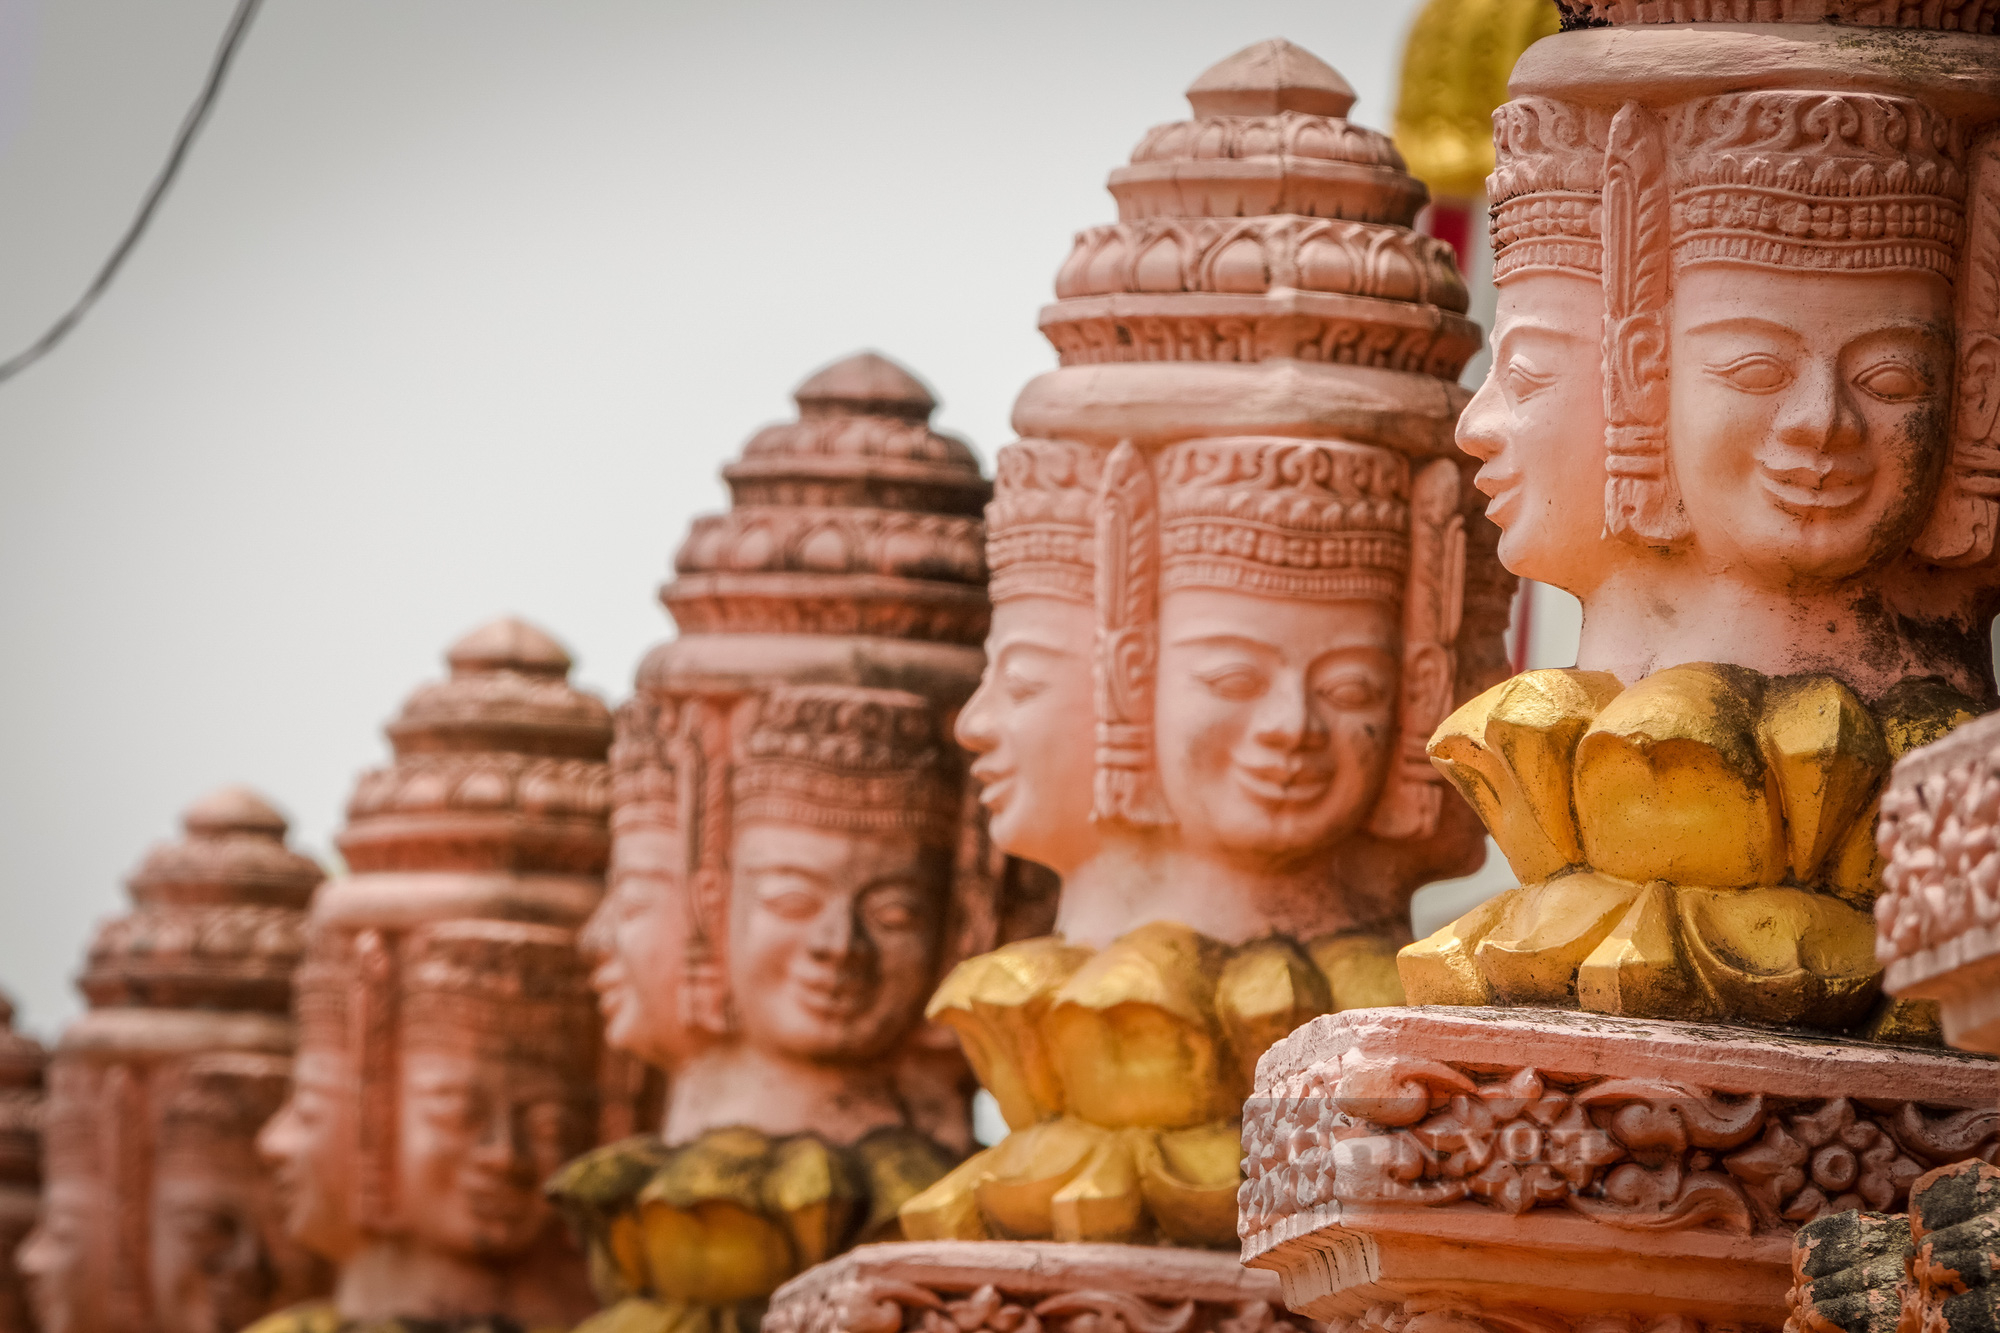 Ngôi chùa Khmer trăm năm tuổi với hàng trăm cây sao cổ thụ “độc” nhất Sóc Trăng - Ảnh 13.